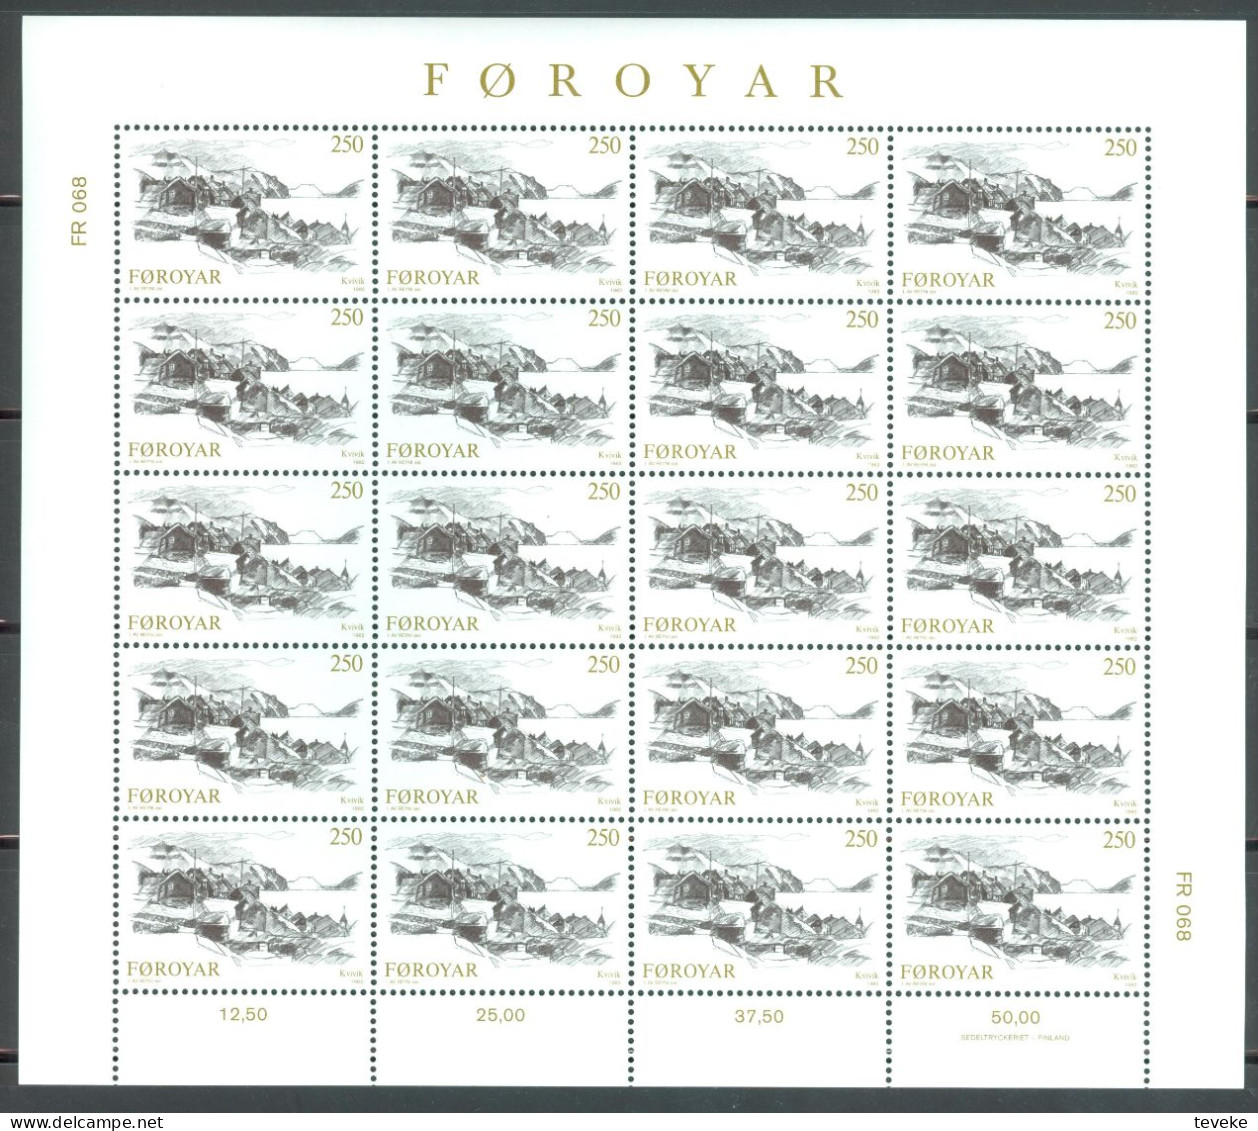 FAEROËR 1982 - MiNr. 72/74 KB - **/MNH - Tourism - Faroese Villages - Faroe Islands